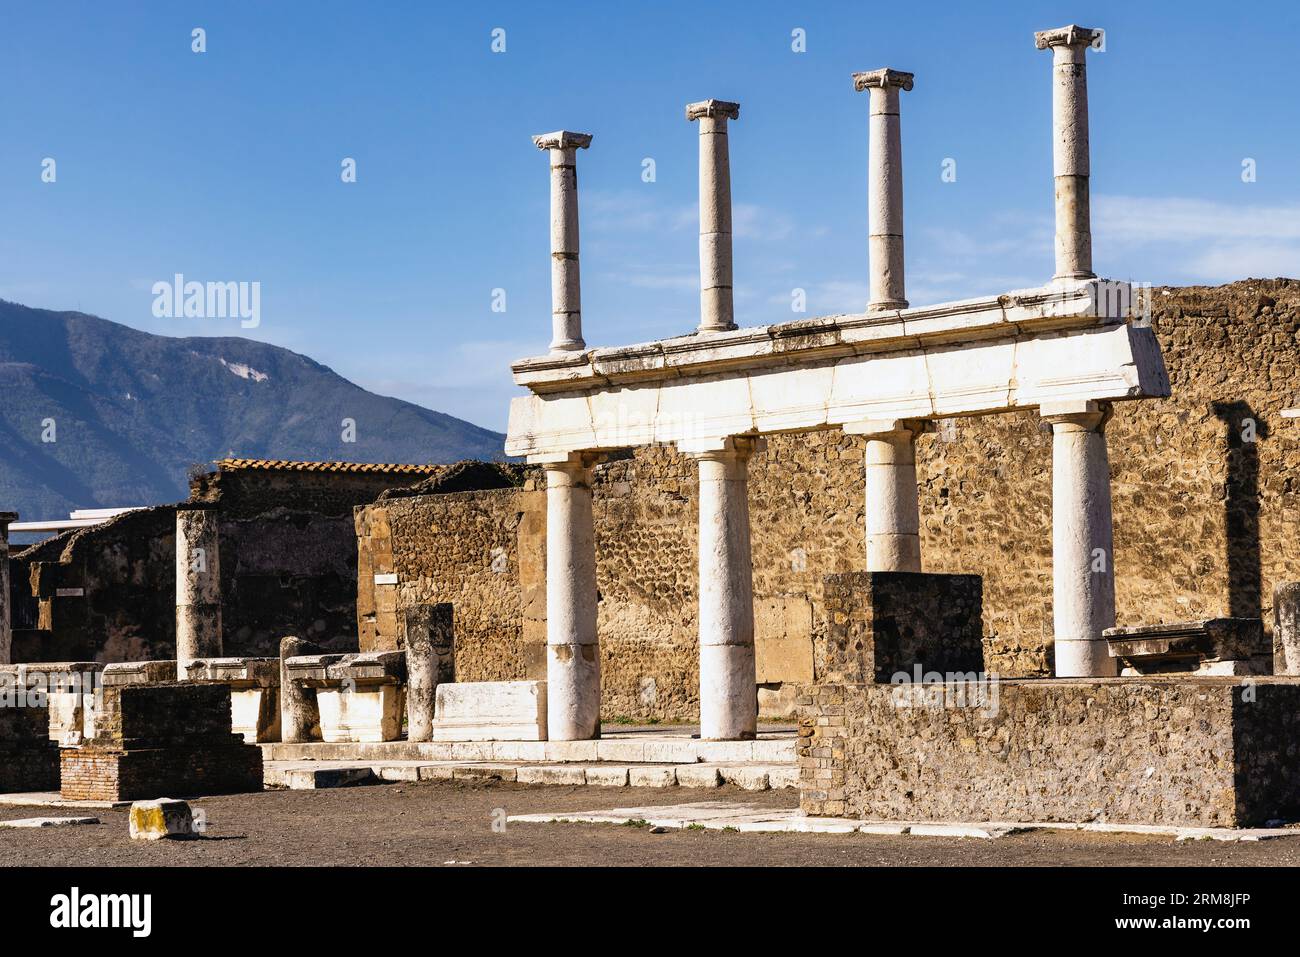 Sito archeologico di Pompei, Campania, Italia. Il Forum. Pompei, Ercolano e Torre Annunziata sono collettivamente dichiarati patrimonio mondiale dell'UNESCO Foto Stock